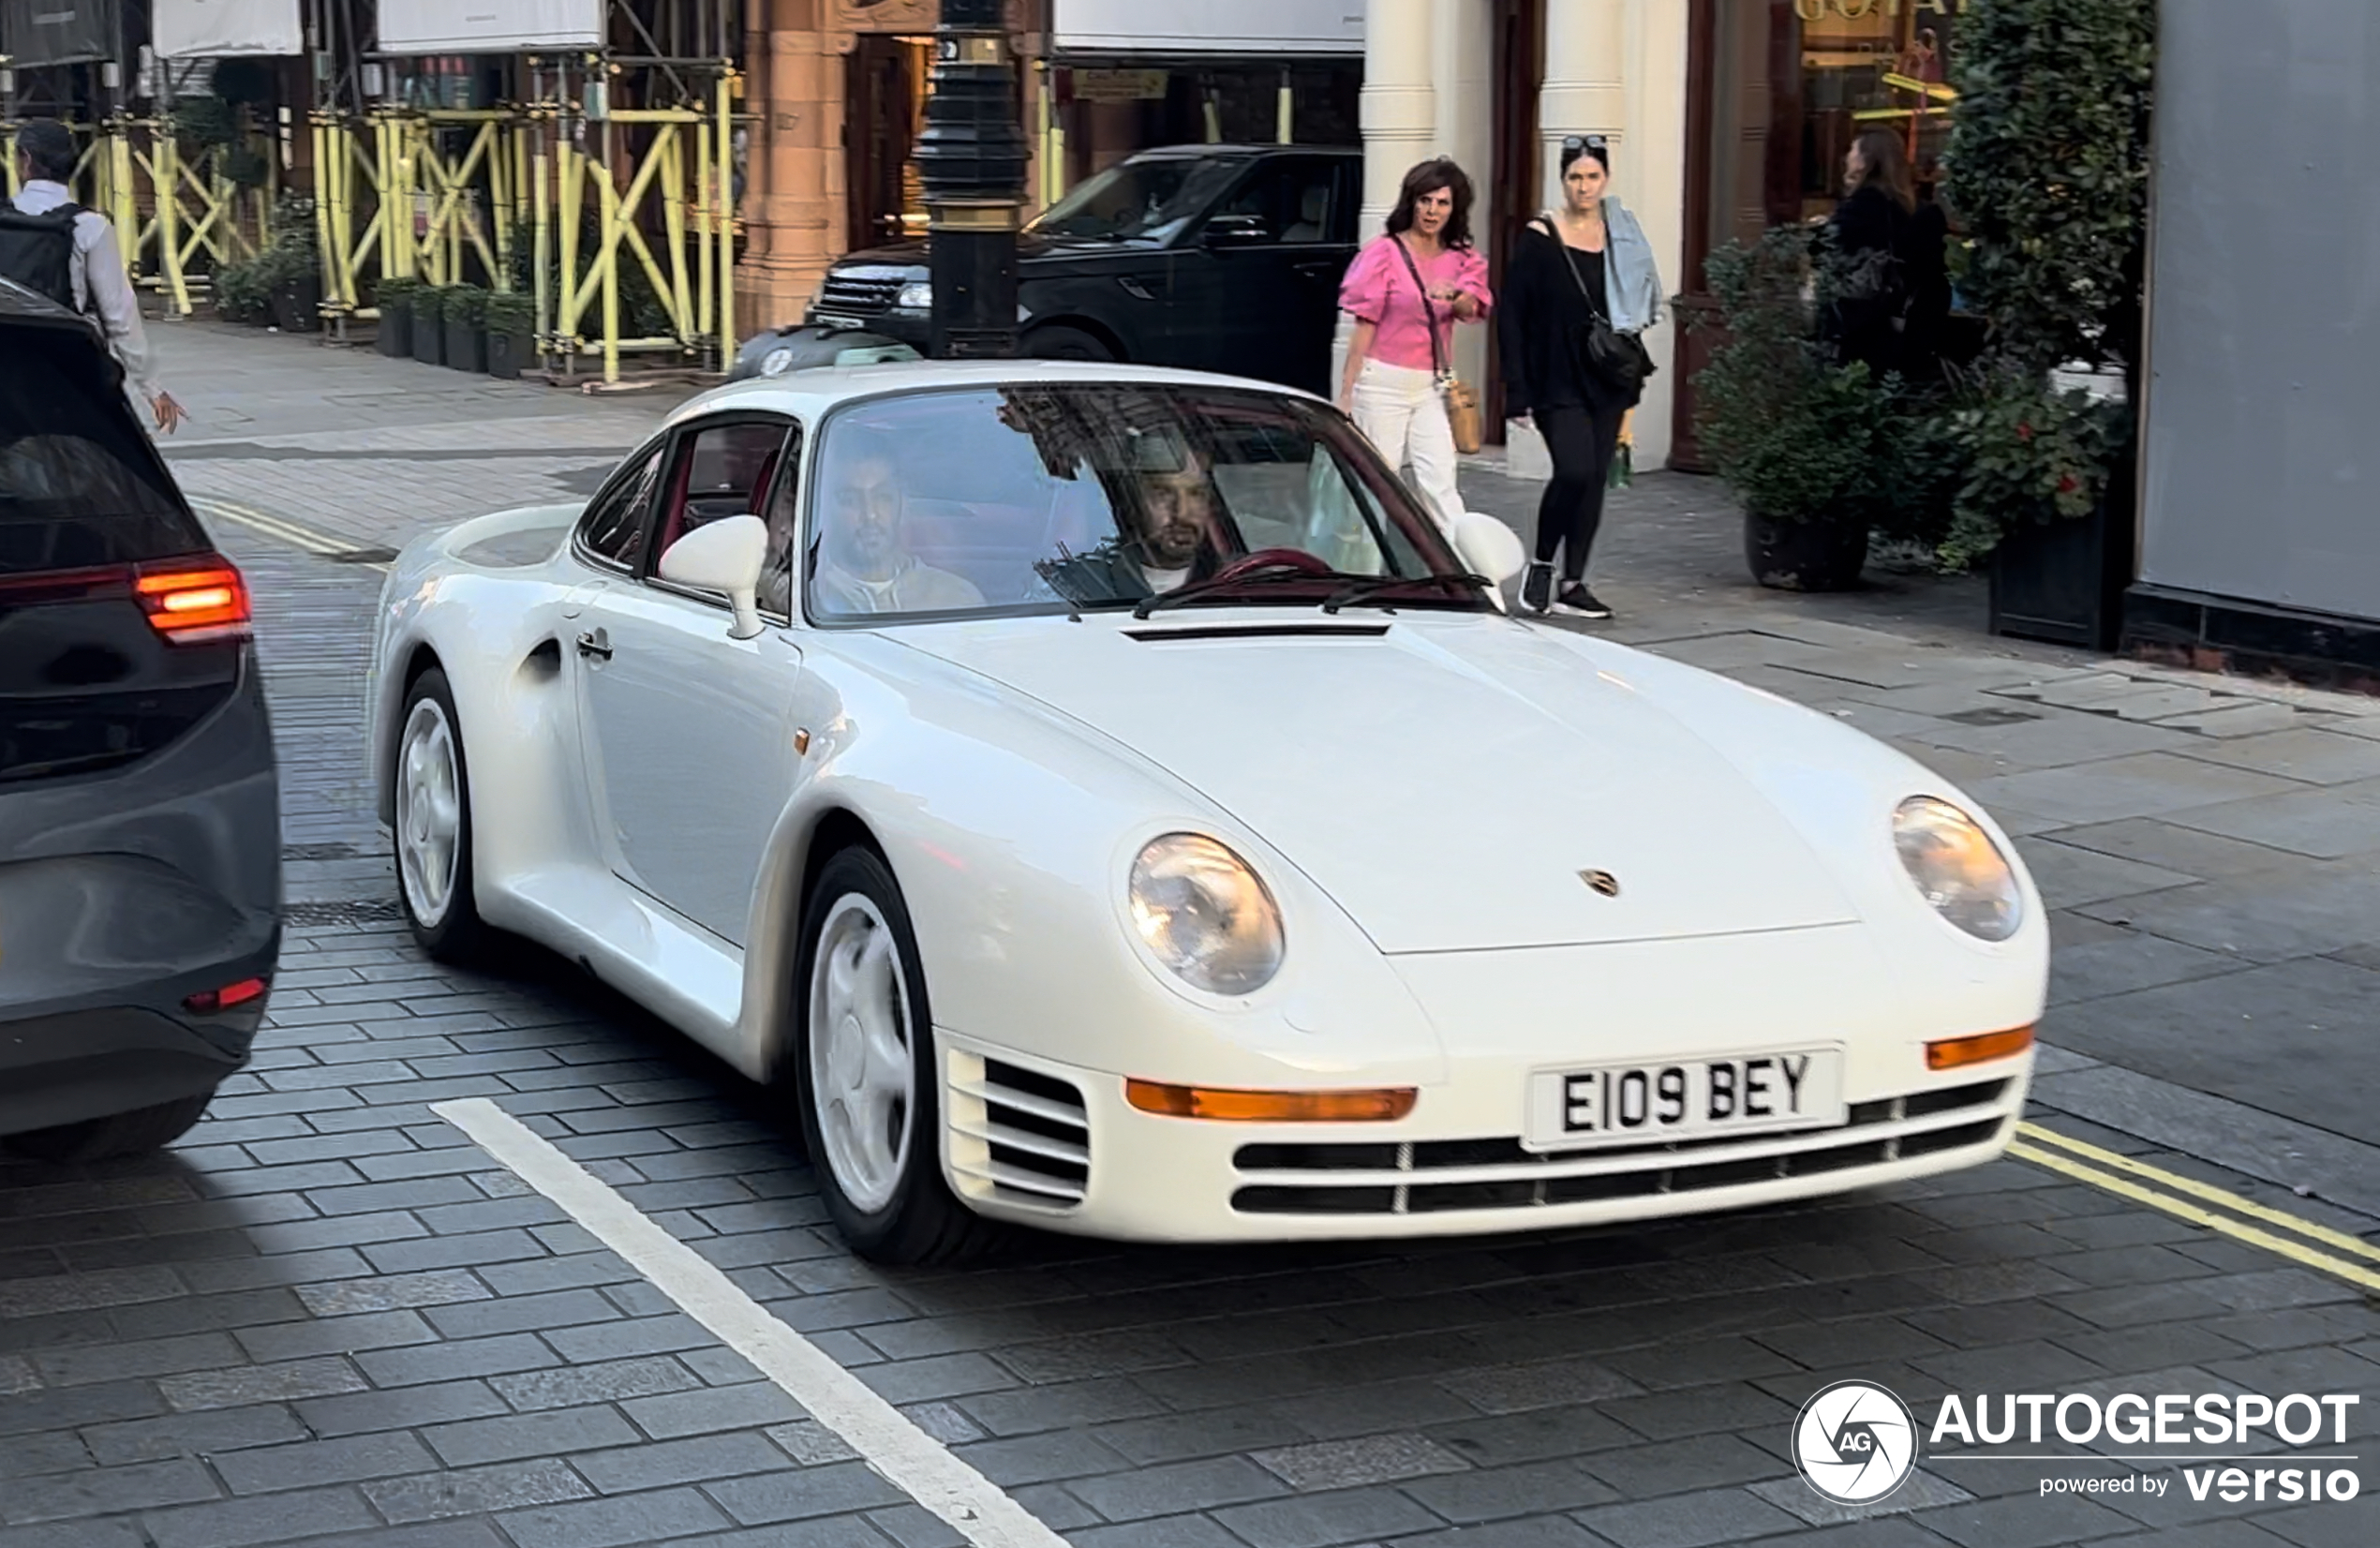 Da li ste ikada videli Porsche 959?